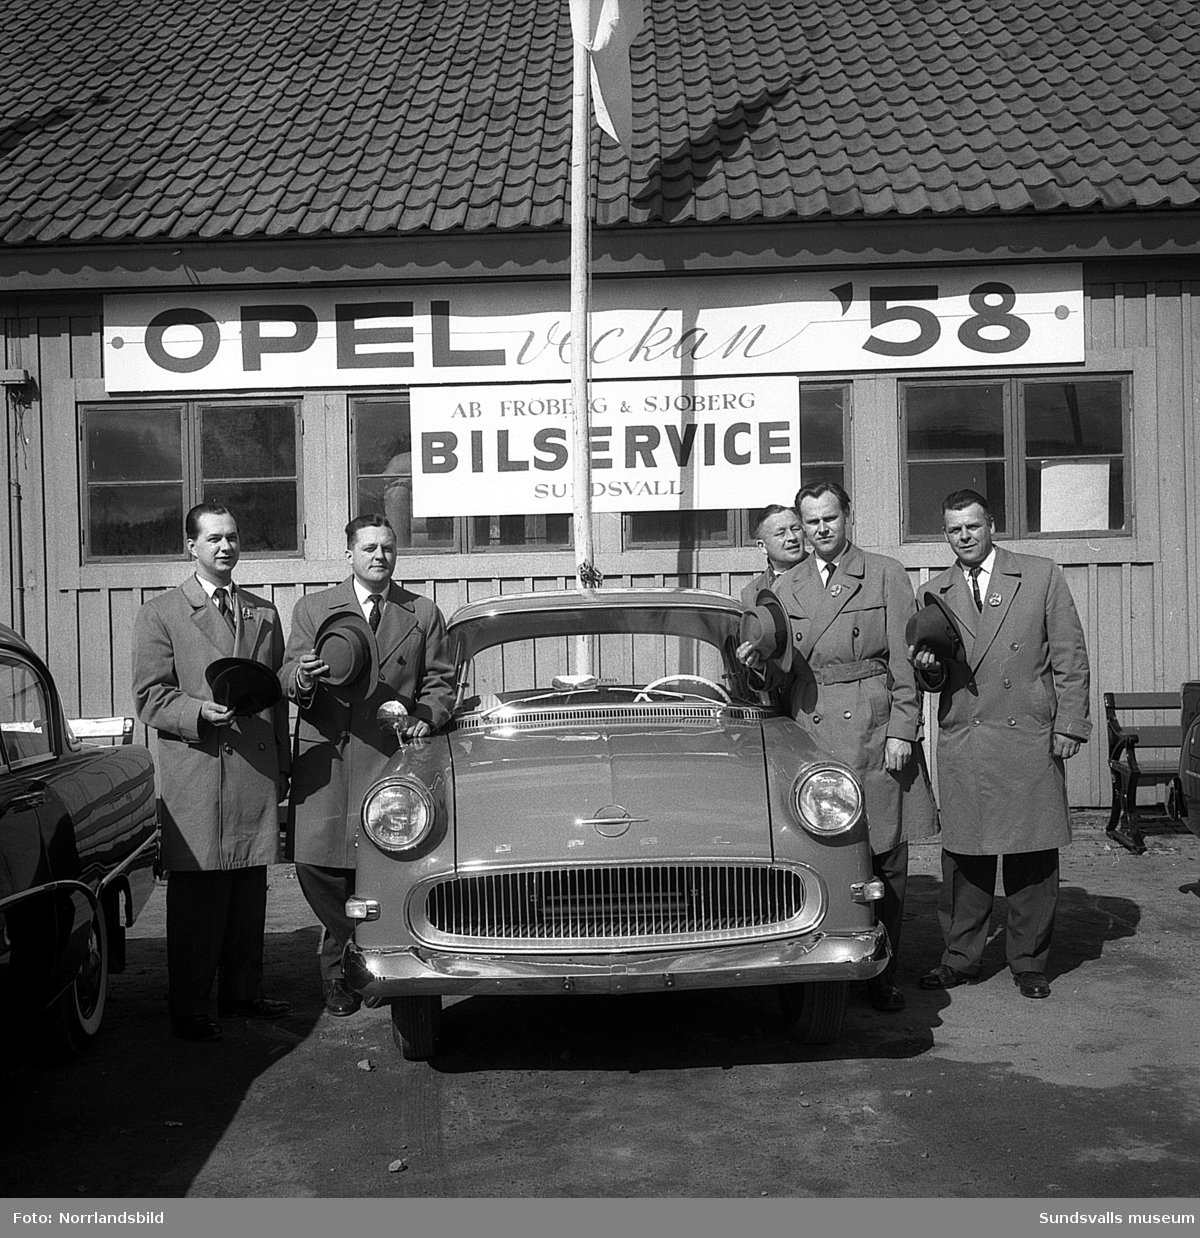 Fröberg & Sjöbergs bilservice laddar för Opel-veckan -58. Okänd adress.